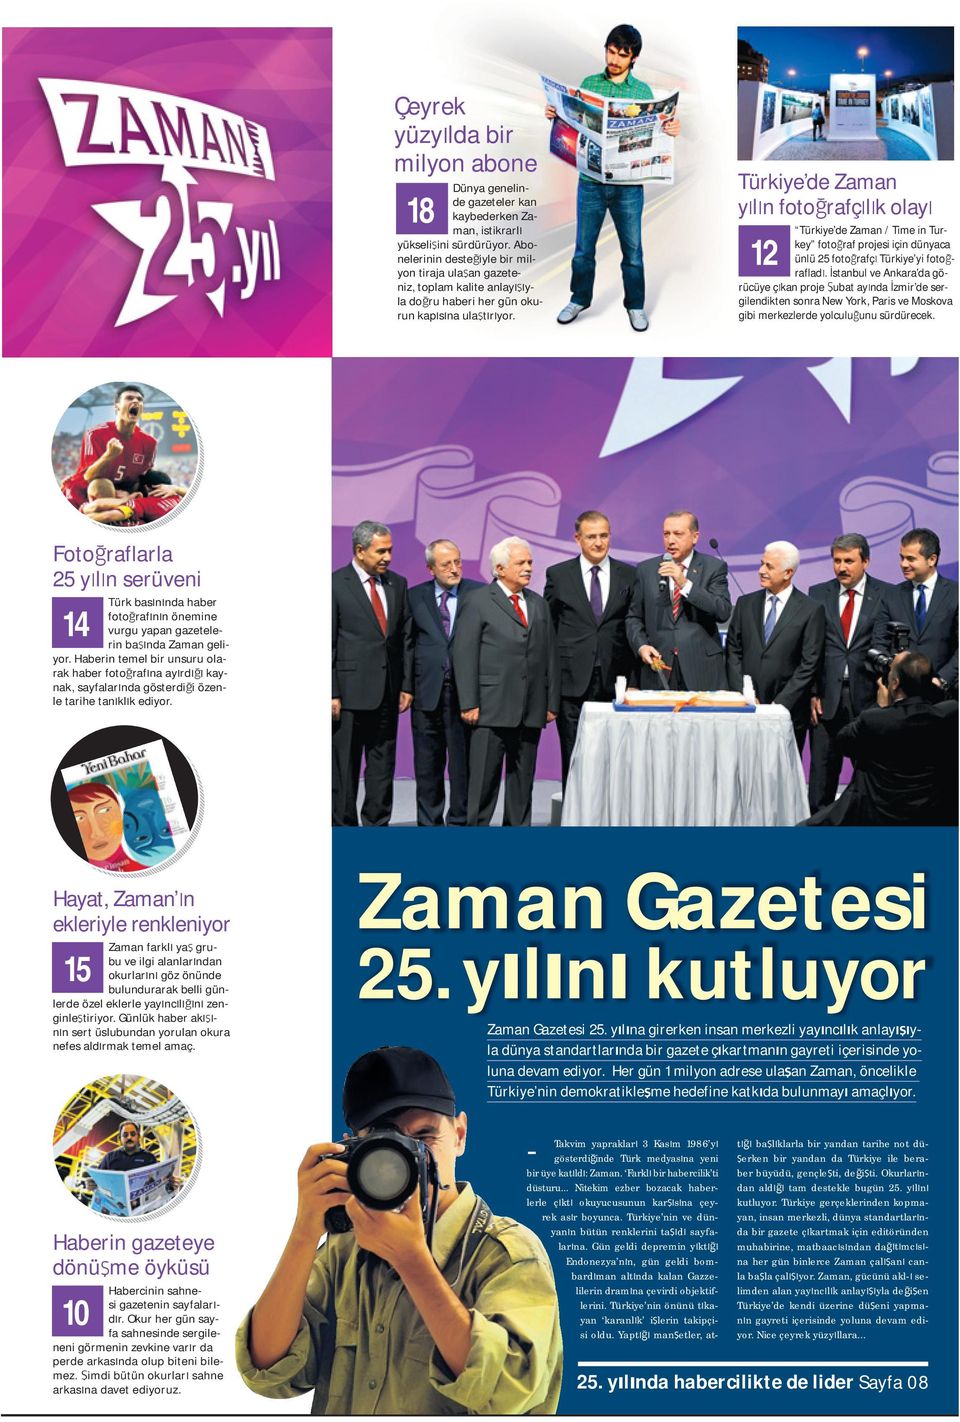 Türkiye de Zaman y l n foto rafç l k olay 12 Türkiye de Zaman / Time in Turkey foto raf projesi için dünyaca ünlü 25 foto rafç Türkiye yi foto raflad.